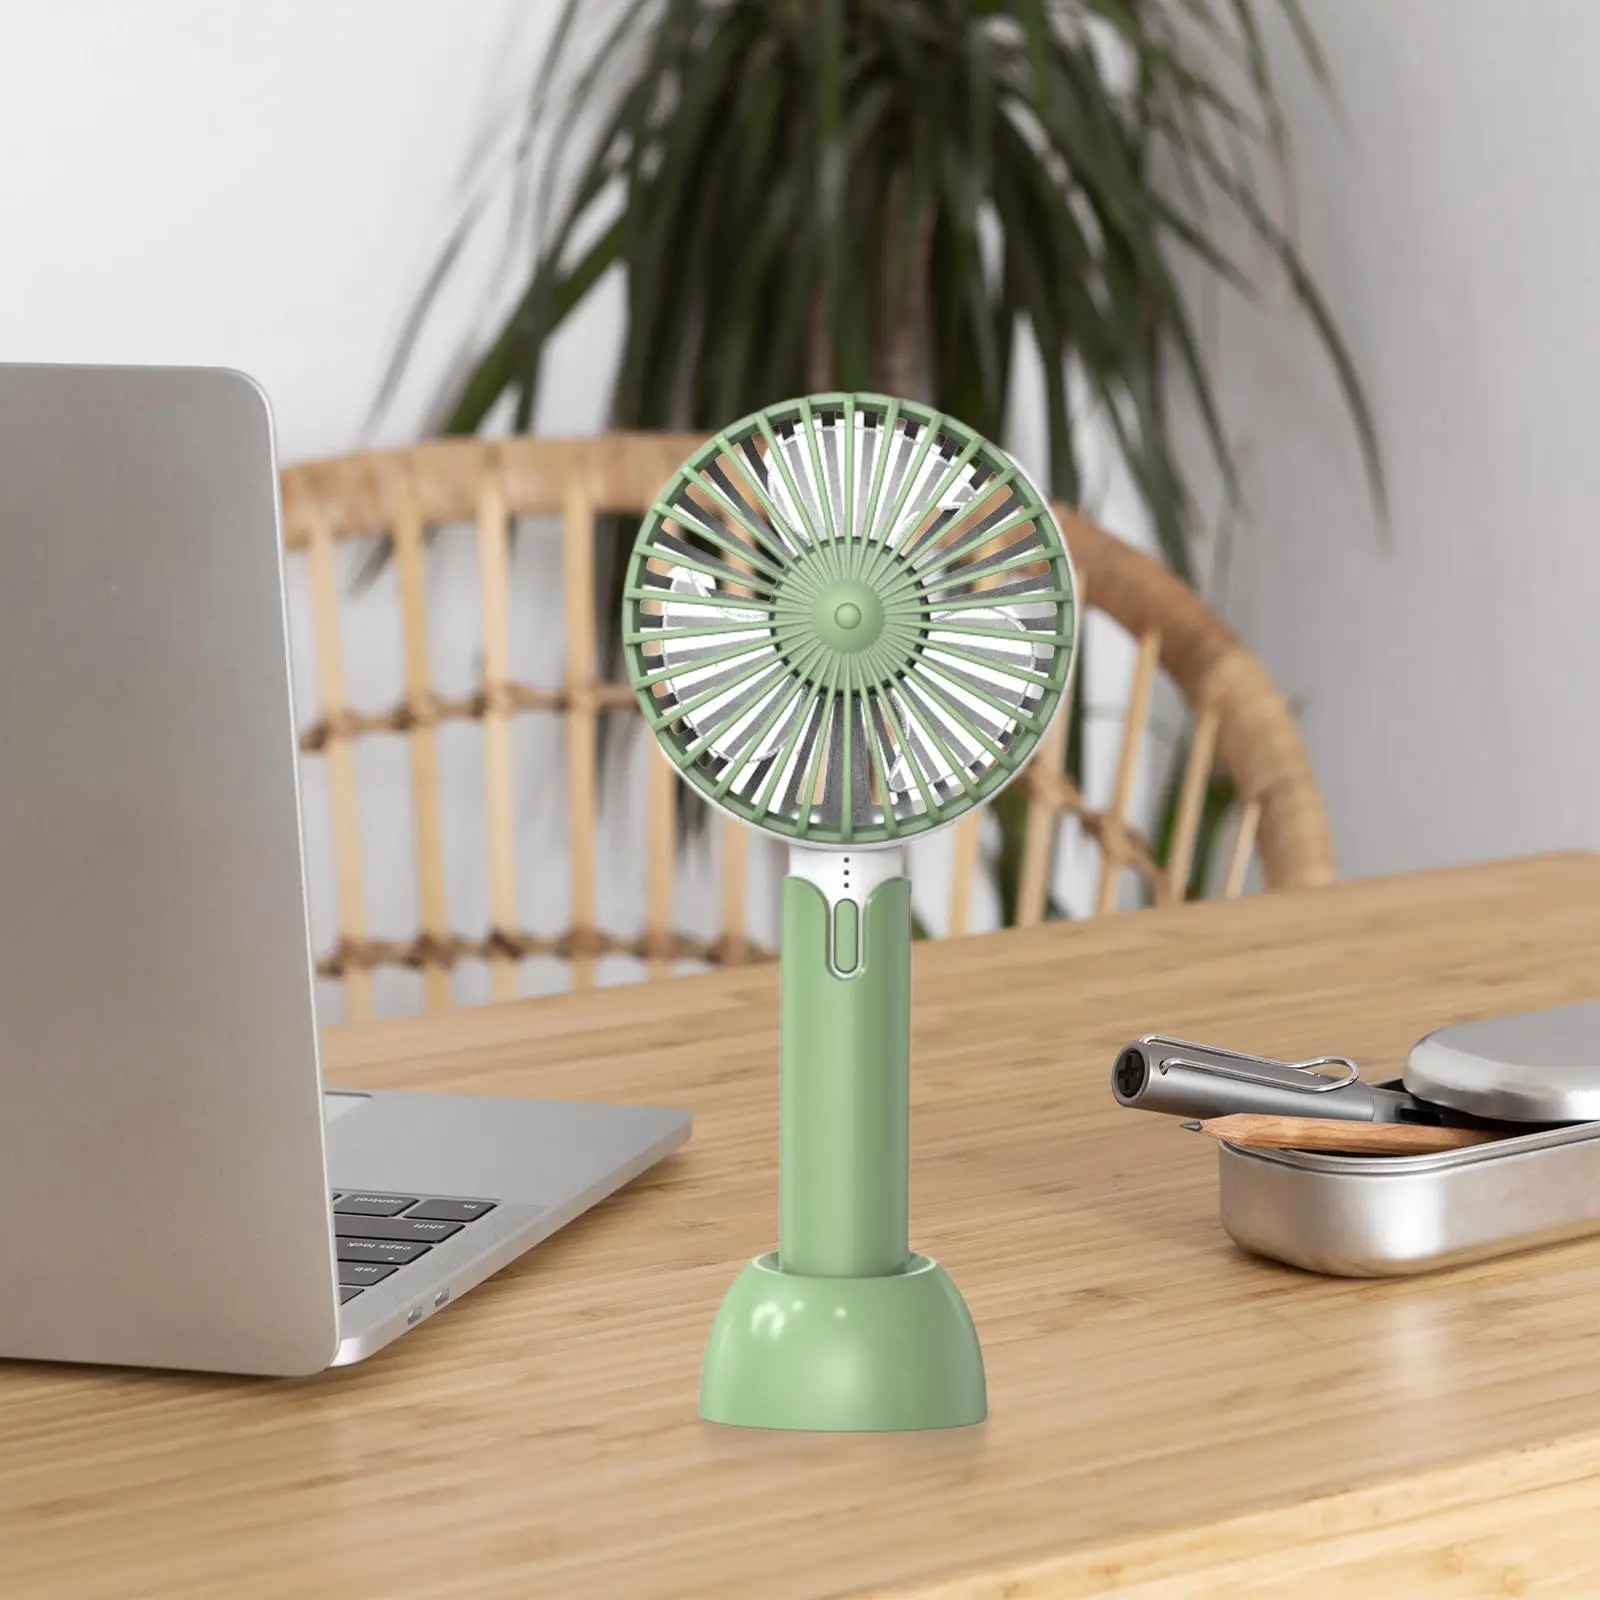 Handheld Fan Compact Quiet Desk Fan with Base, 3 Speeds Mini Portable Fan Summer Pocket Fan for Traveling Home Office Hiking